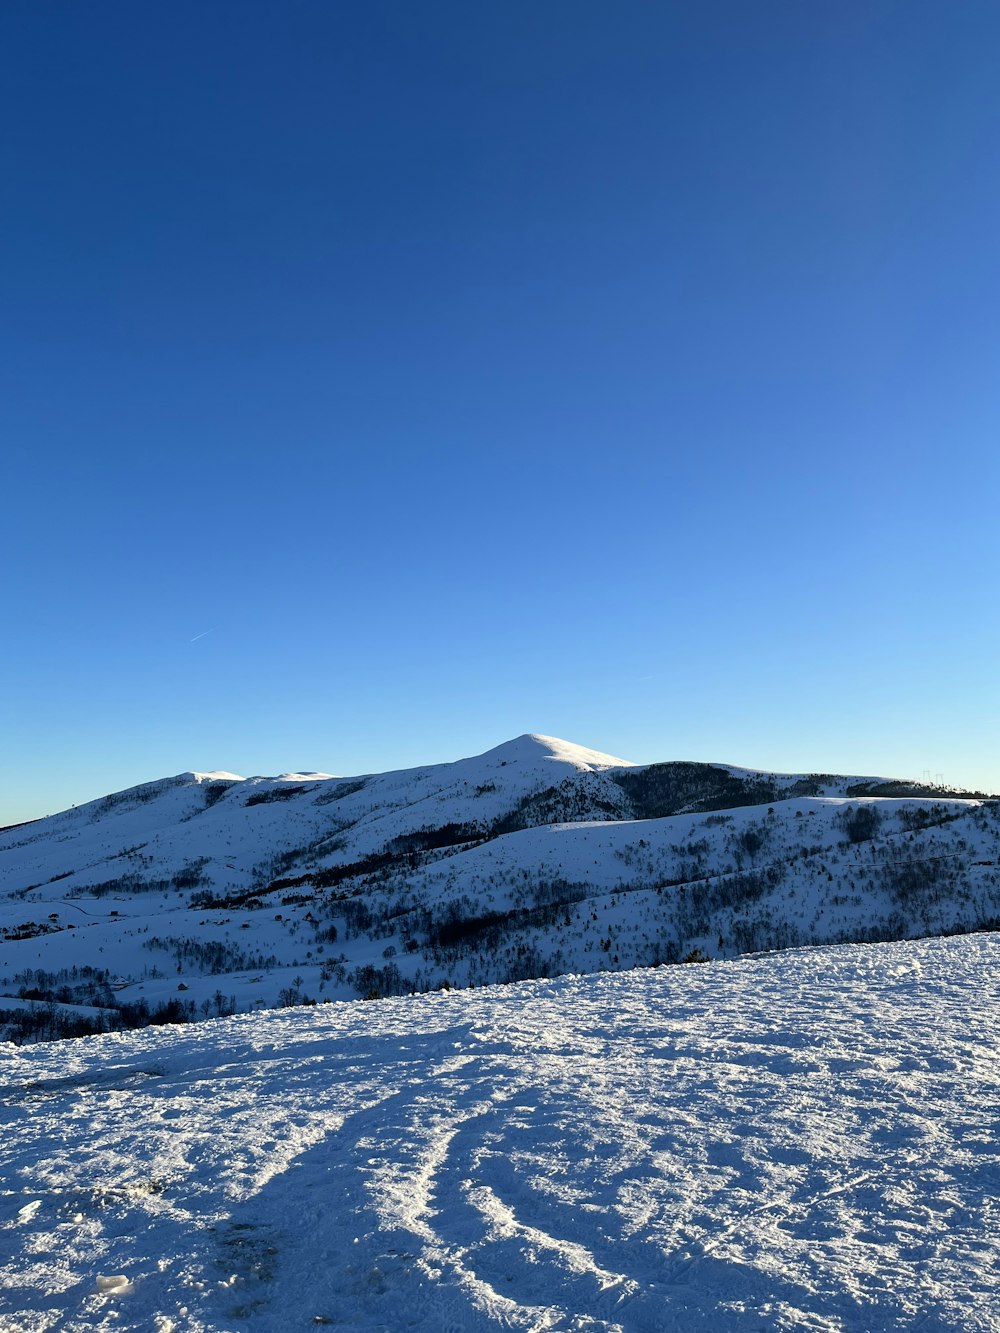 Una vista de una montaña nevada con huellas en la nieve